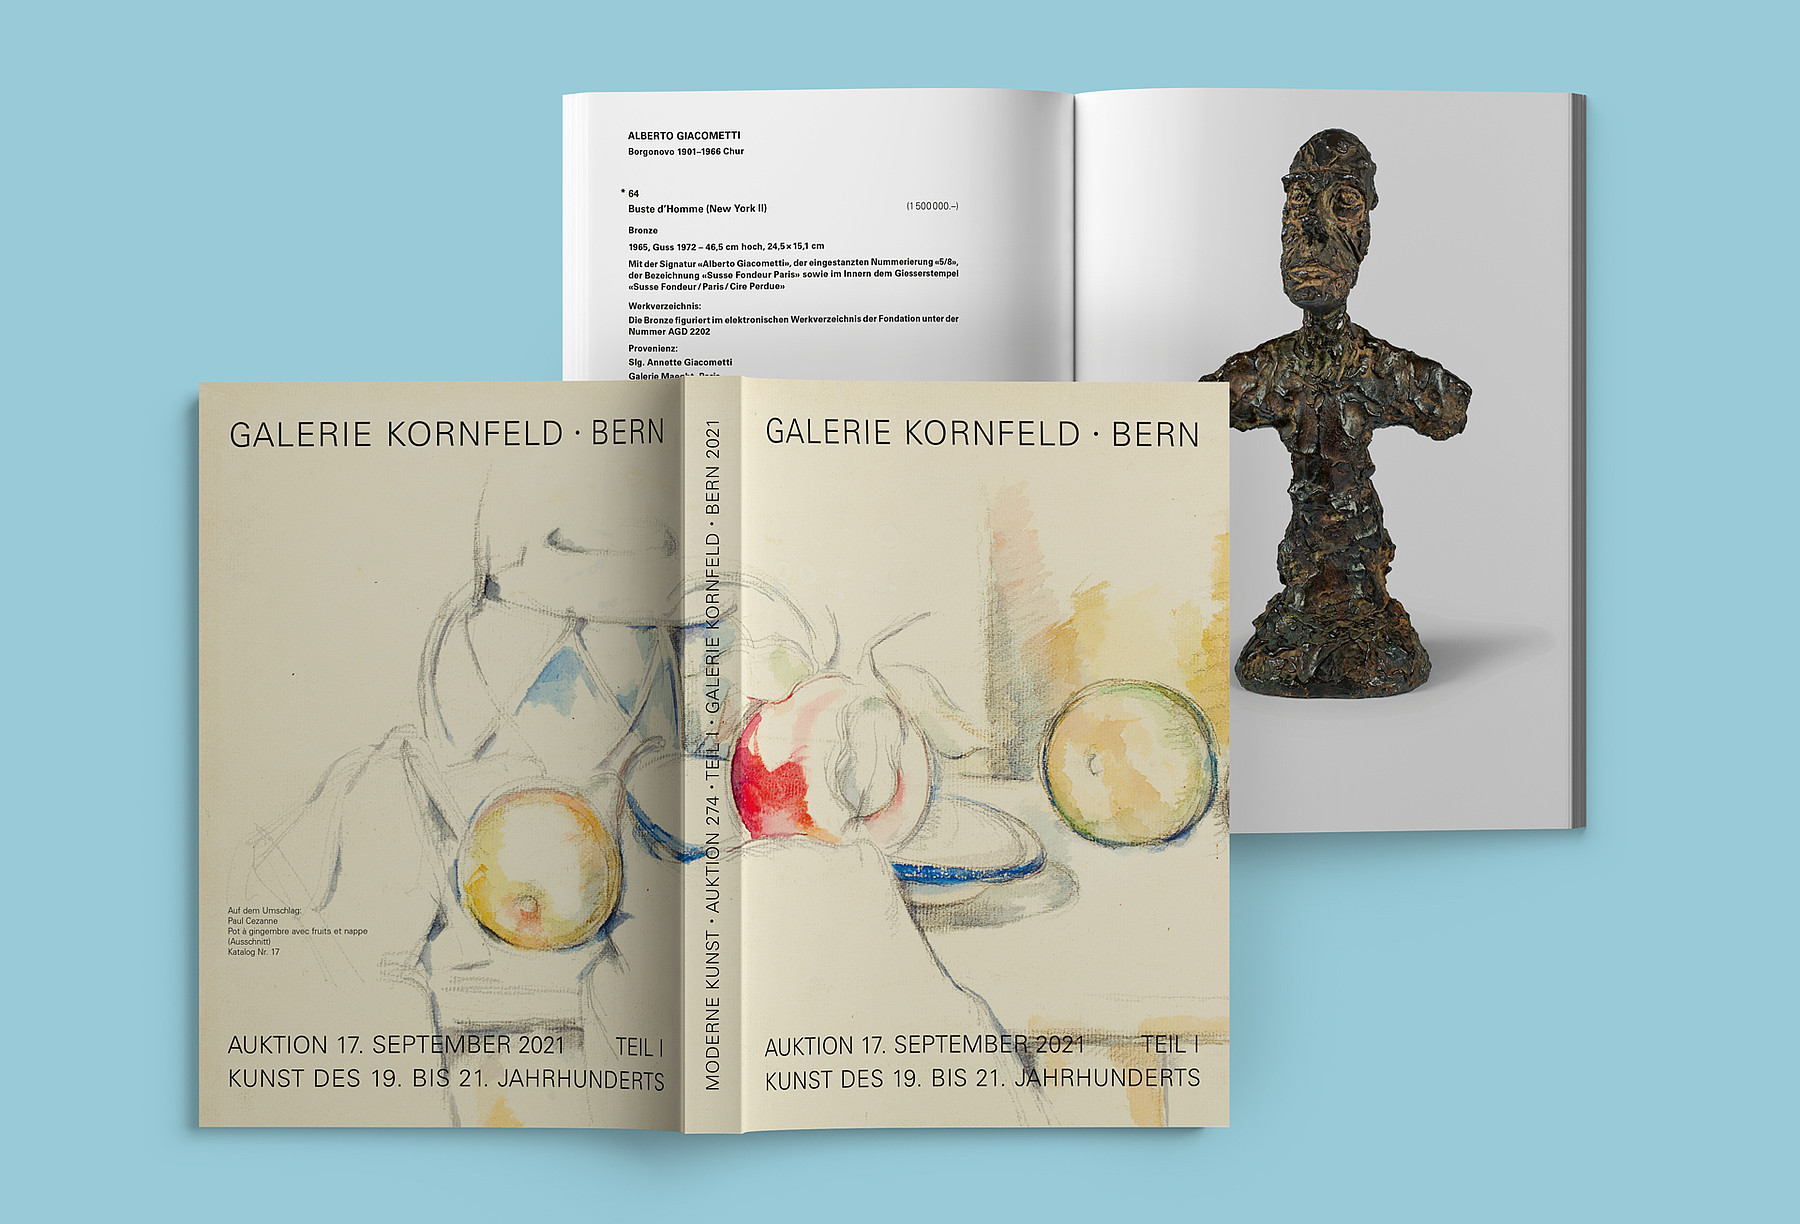 Katalog der Galerie Kornfeld von aussen und von innen: «Auktion 17. September 2021 – Kunst des 19. bis 21. Jahrhunderts Teil I»